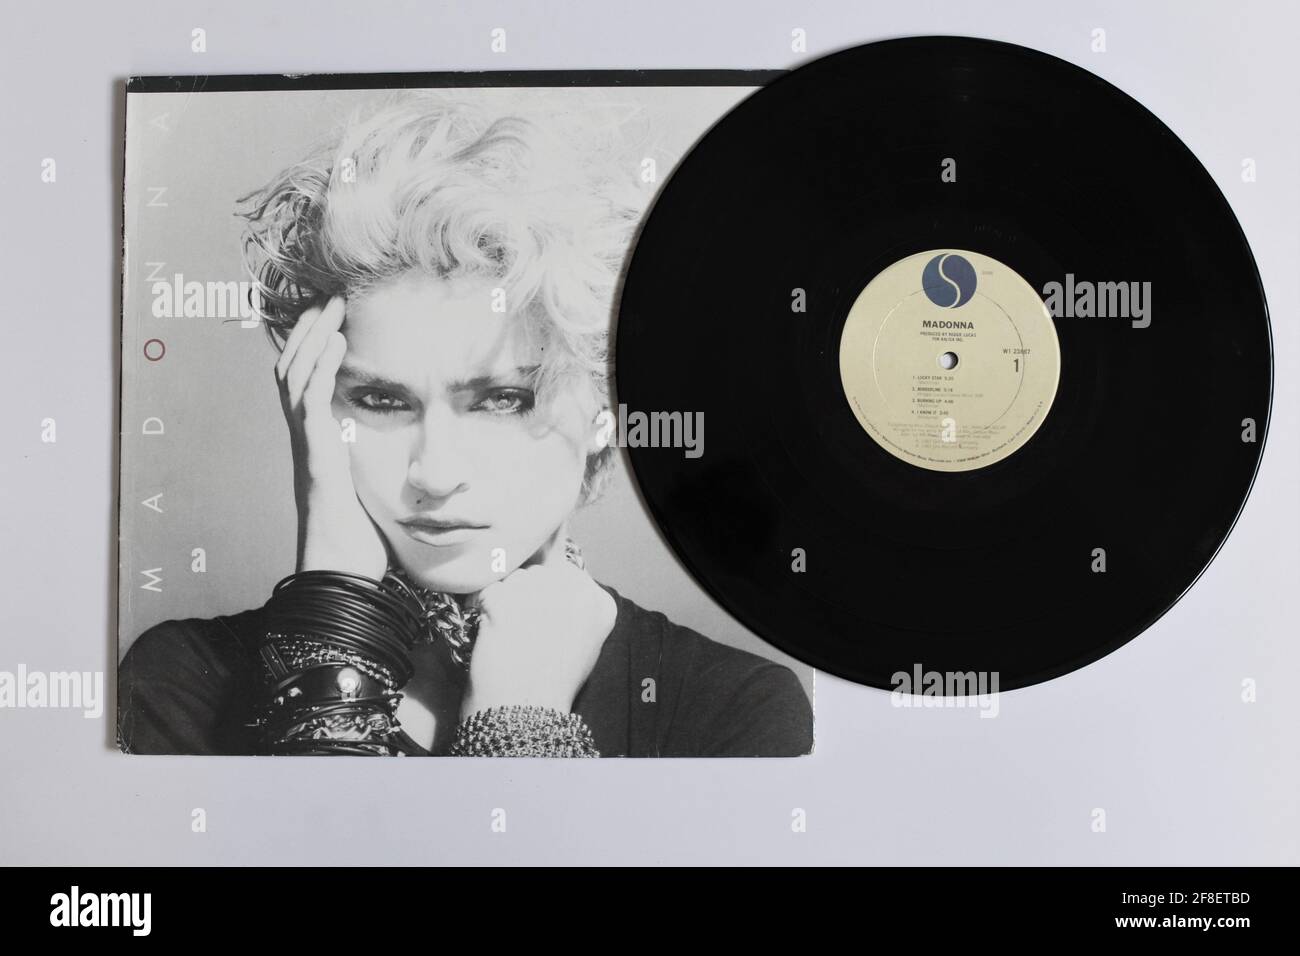 Dance, pop y artista disco, Madonna álbum de música en disco LP de vinilo.  Título: Madonna El primer álbum, portada del álbum Fotografía de stock -  Alamy